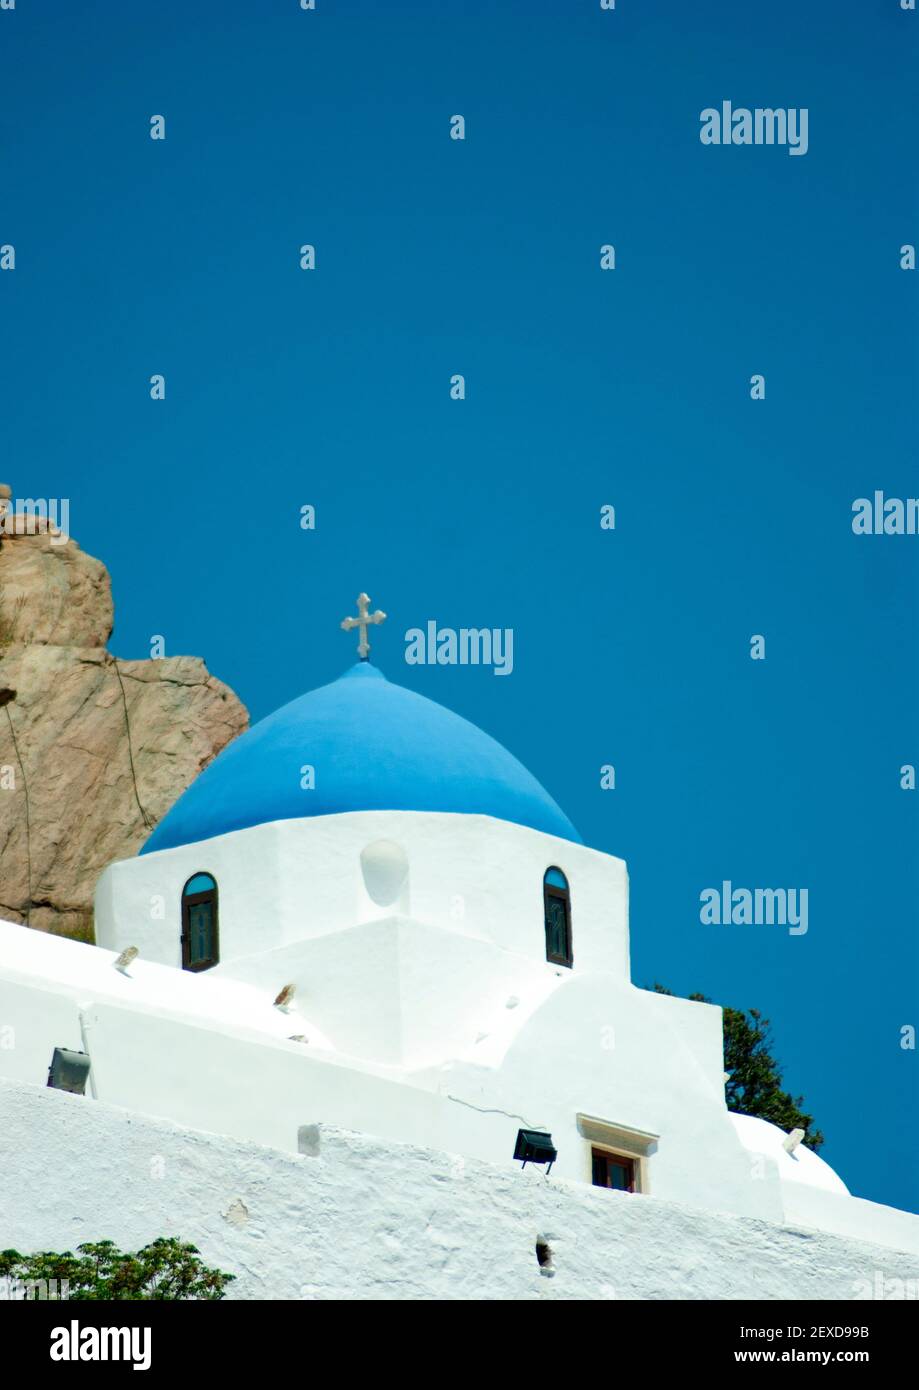 IOS, Grecia. Bella cappella tradizionale sulla collina sopra il vecchio villaggio delle isole. Vista verticale con cielo blu chiaro per lo spazio di copia. Scatto dettagliato o Foto Stock